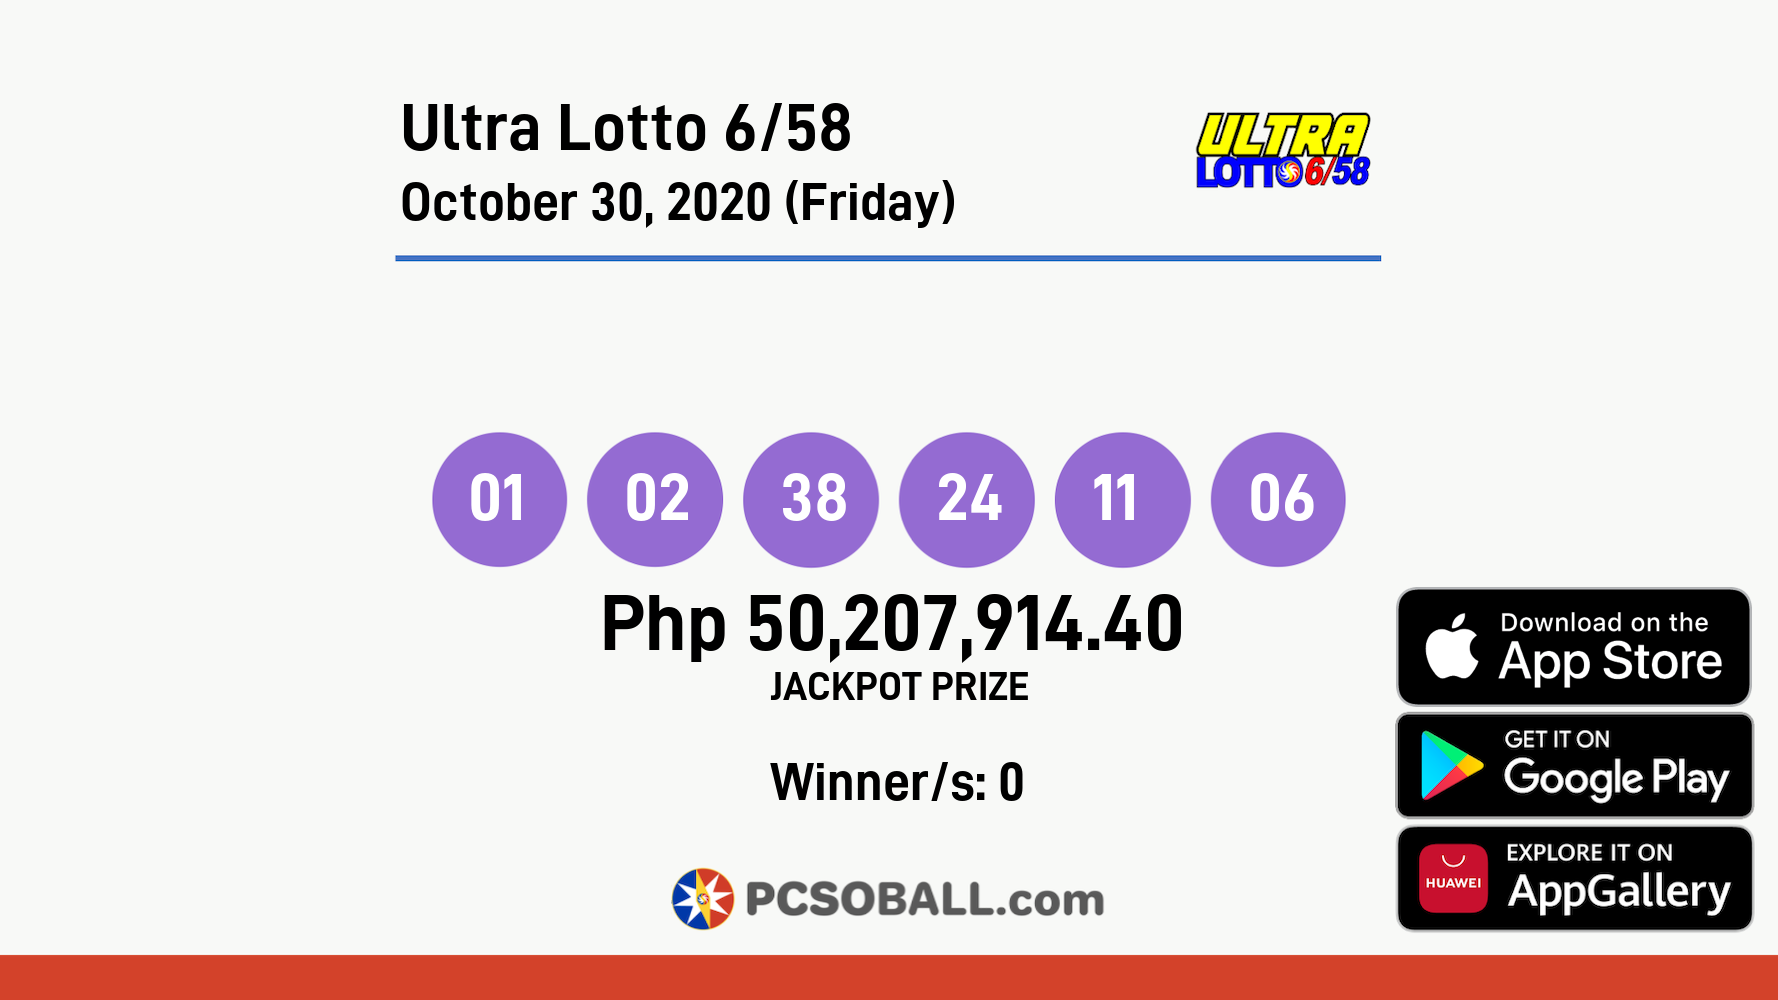 Ultra Lotto 6/58 October 30, 2020 (Friday) Result